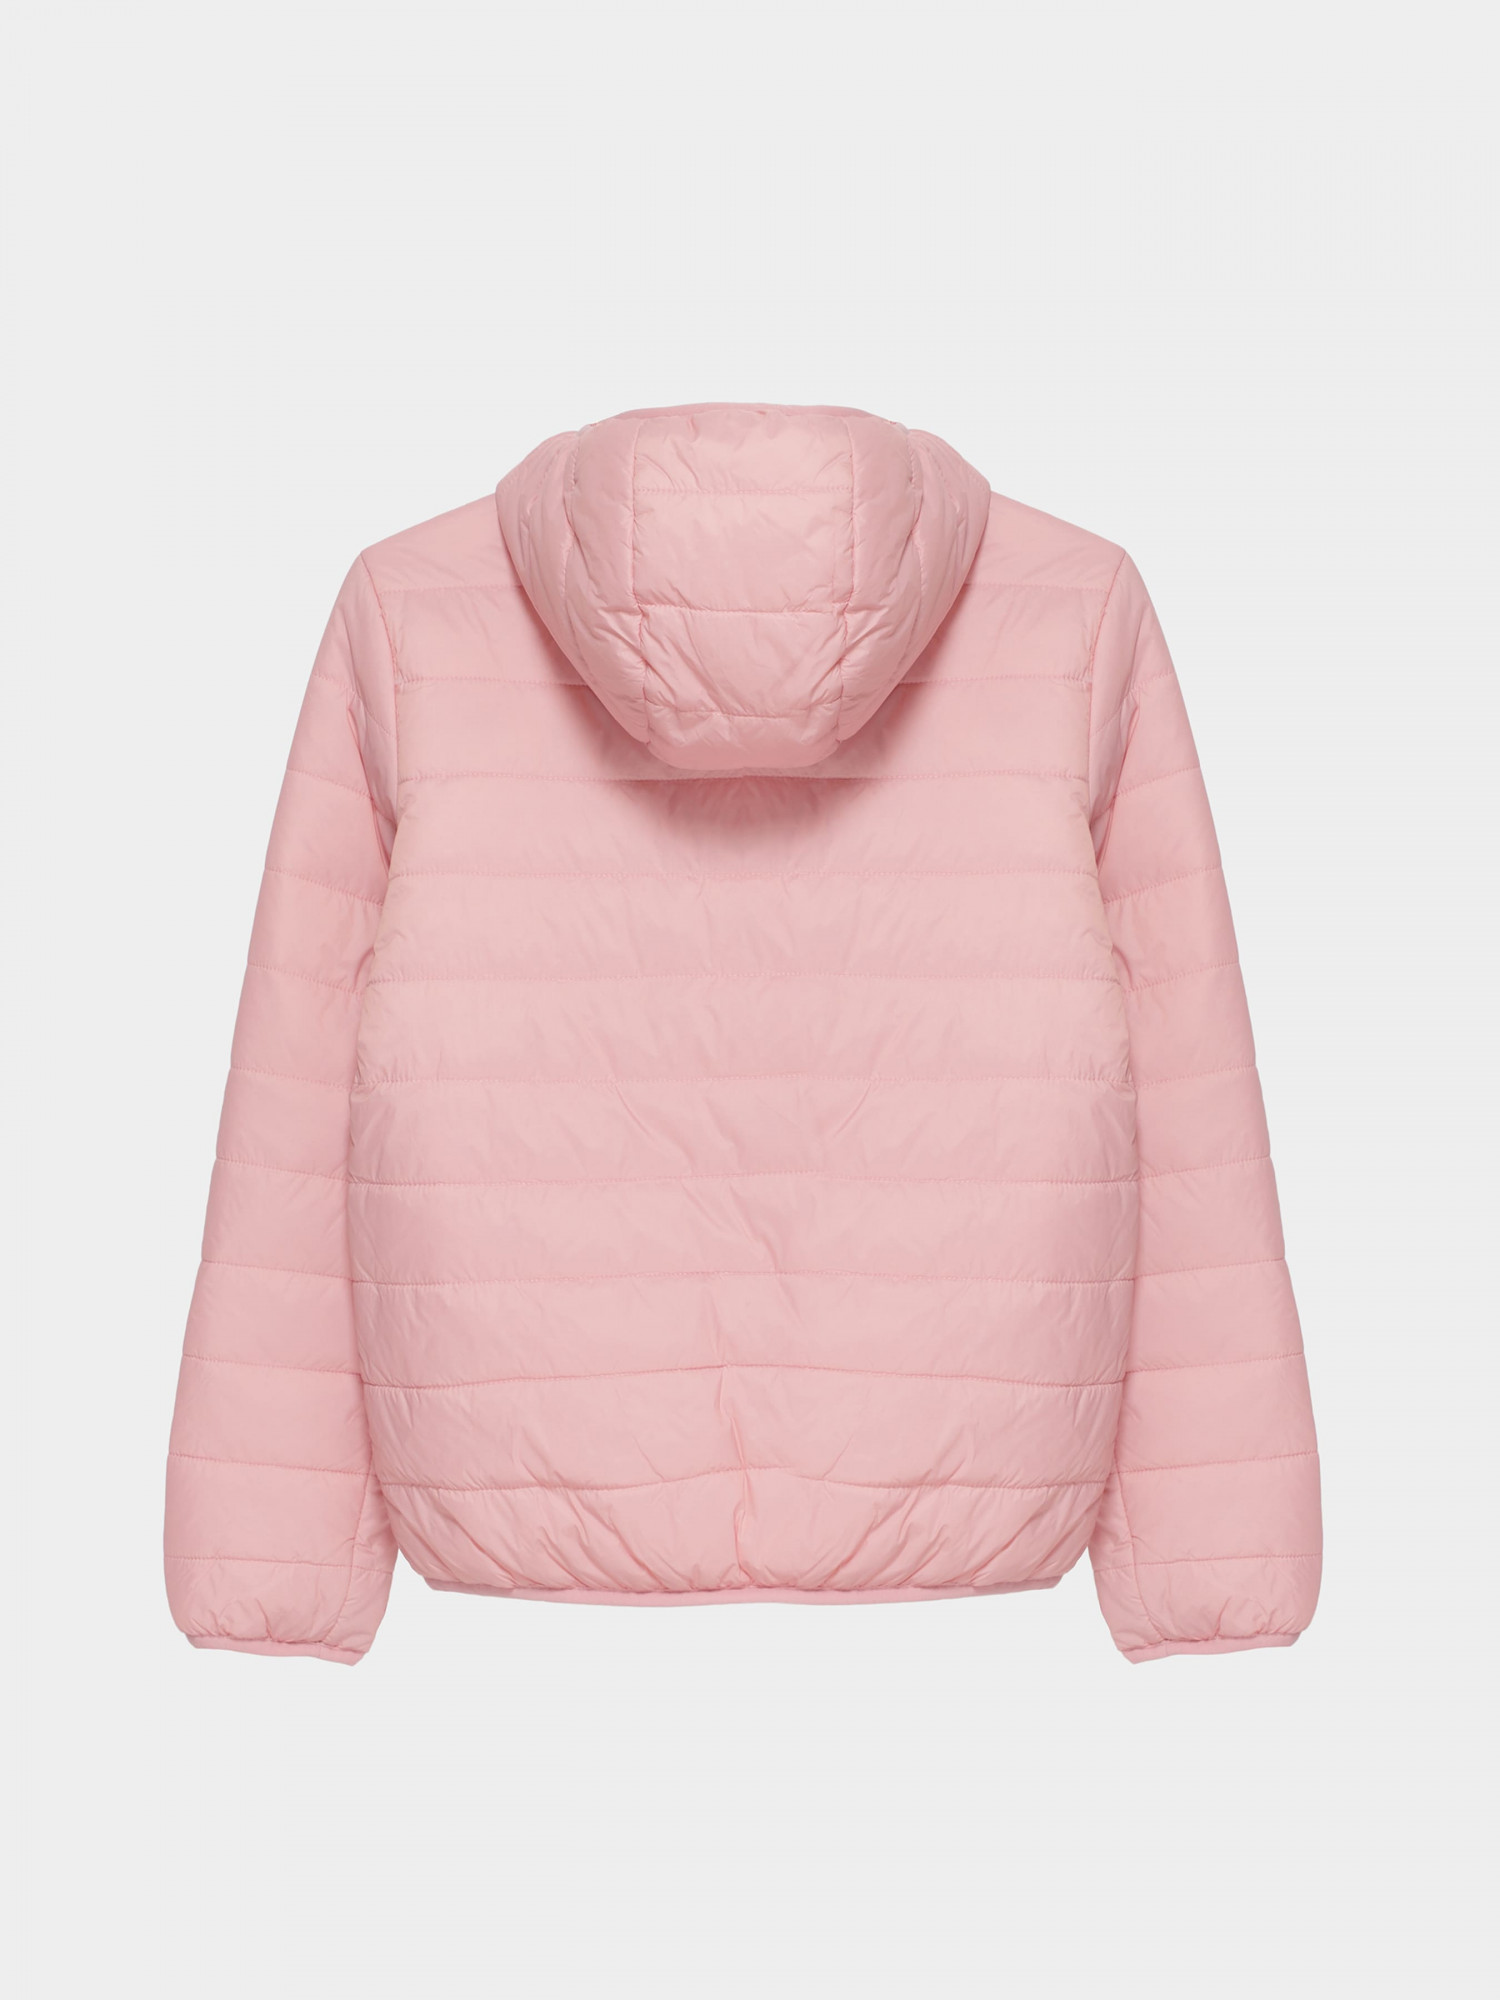 Куртка детская Radder Cairns розовая 122230-600 изображение 5